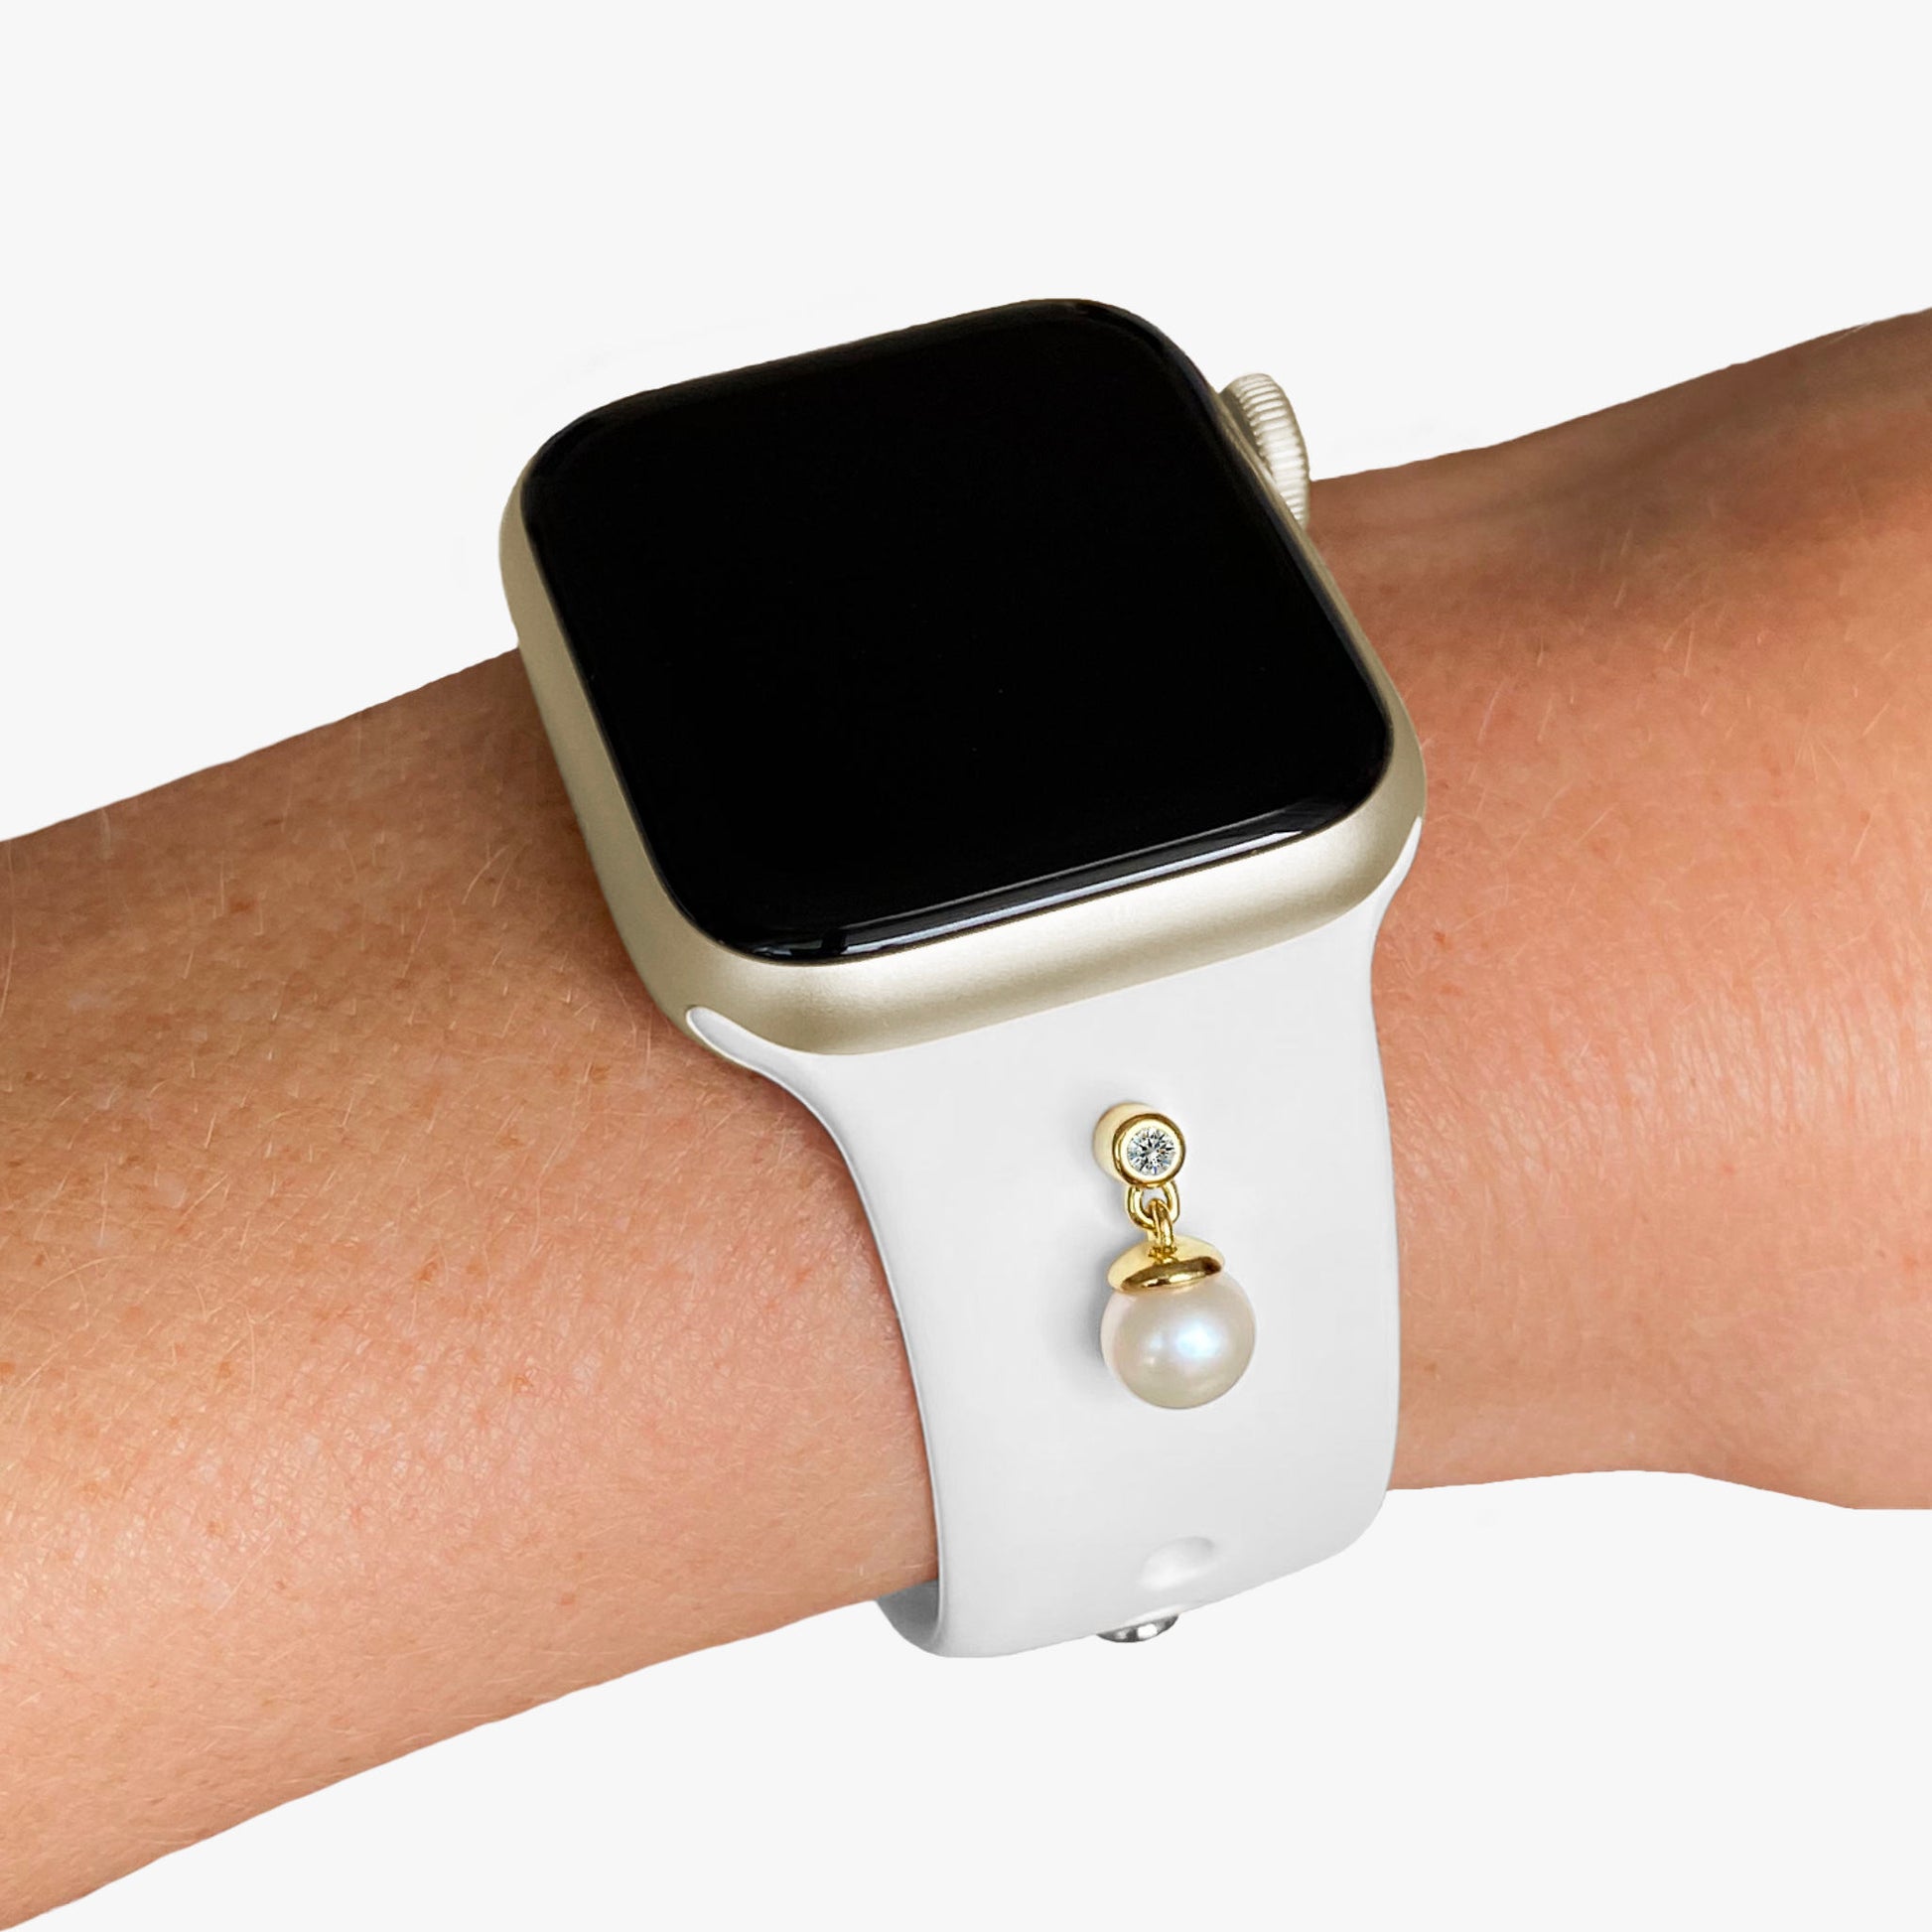  Pamoro® Schmuck Set für deine Apple Watch - Sportarmband in weiß + Charm in echt Silber vergoldet - bewegliche echte Süßwasserperle und weißer Cubic Zirkonia 